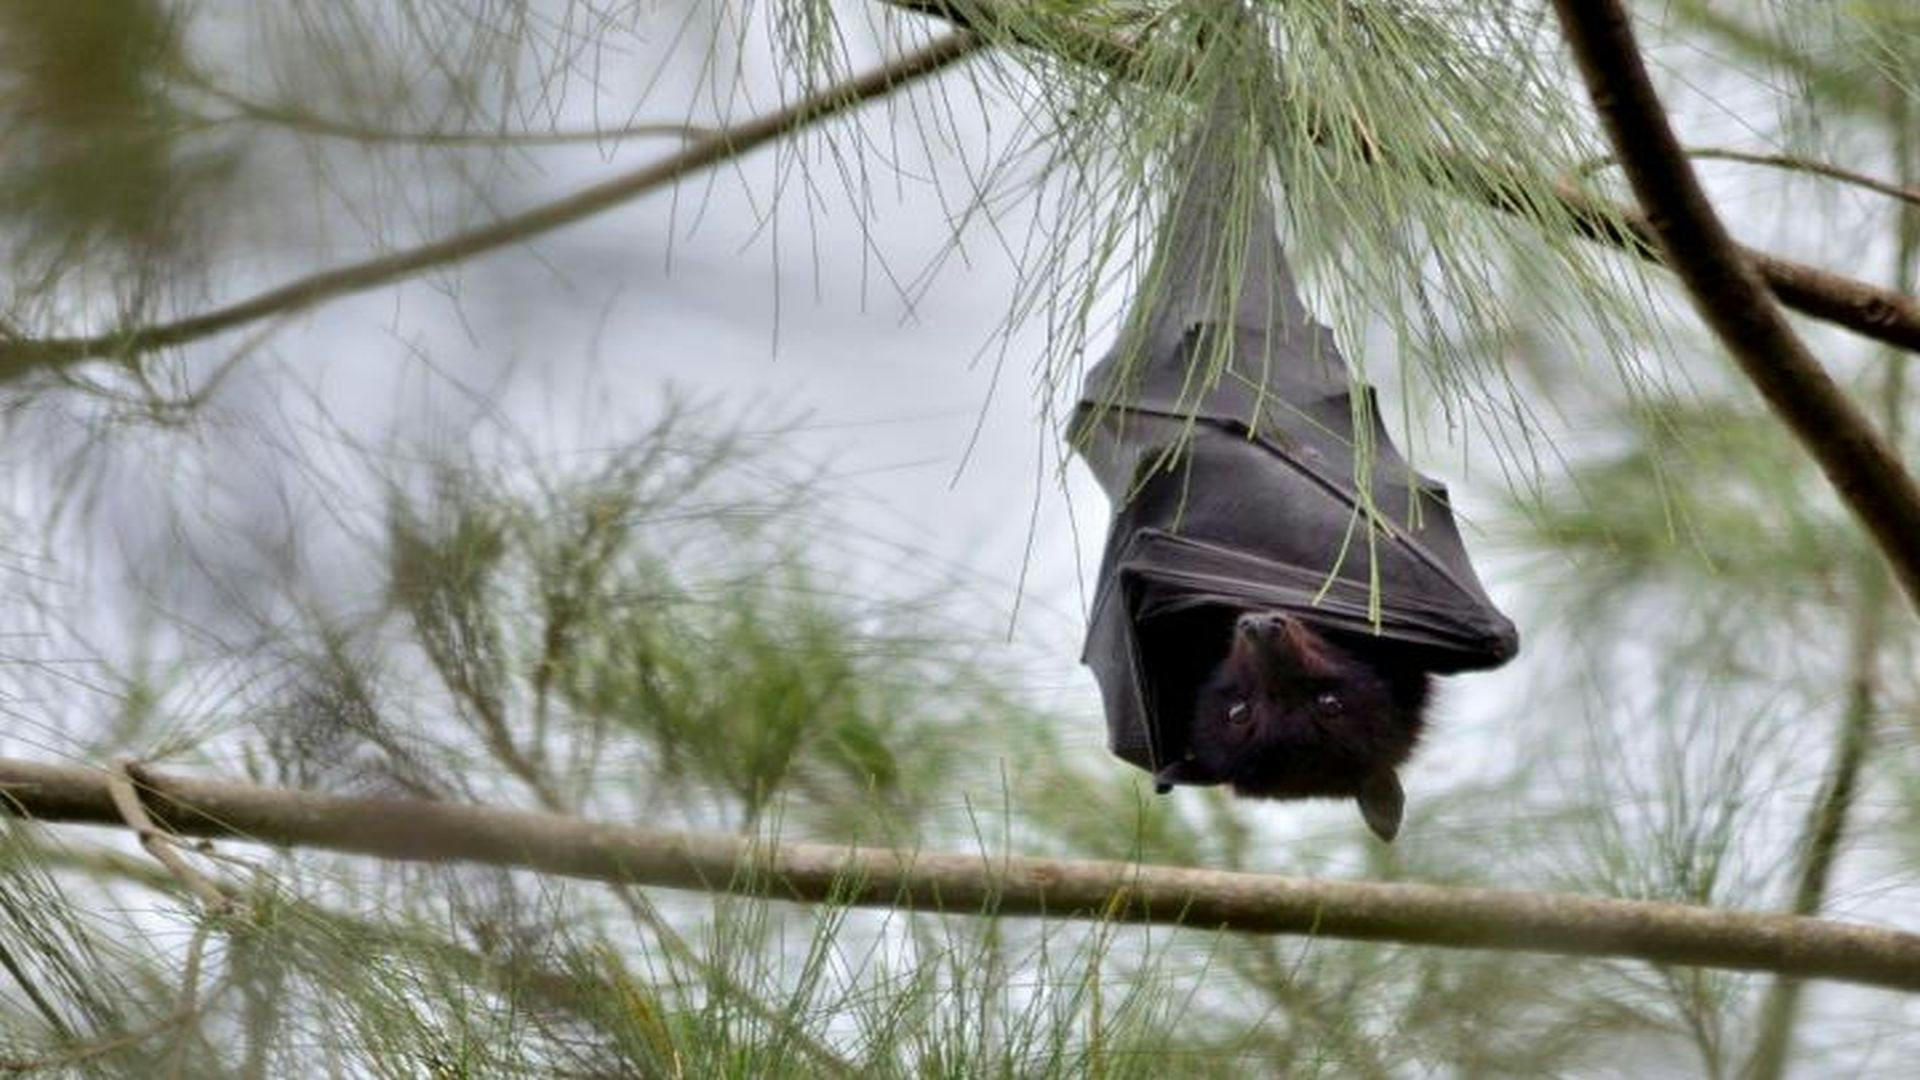 Human Intrusion on Fruit Bat Habitats Raises Exposure Risk to Hendra Virus in Australia